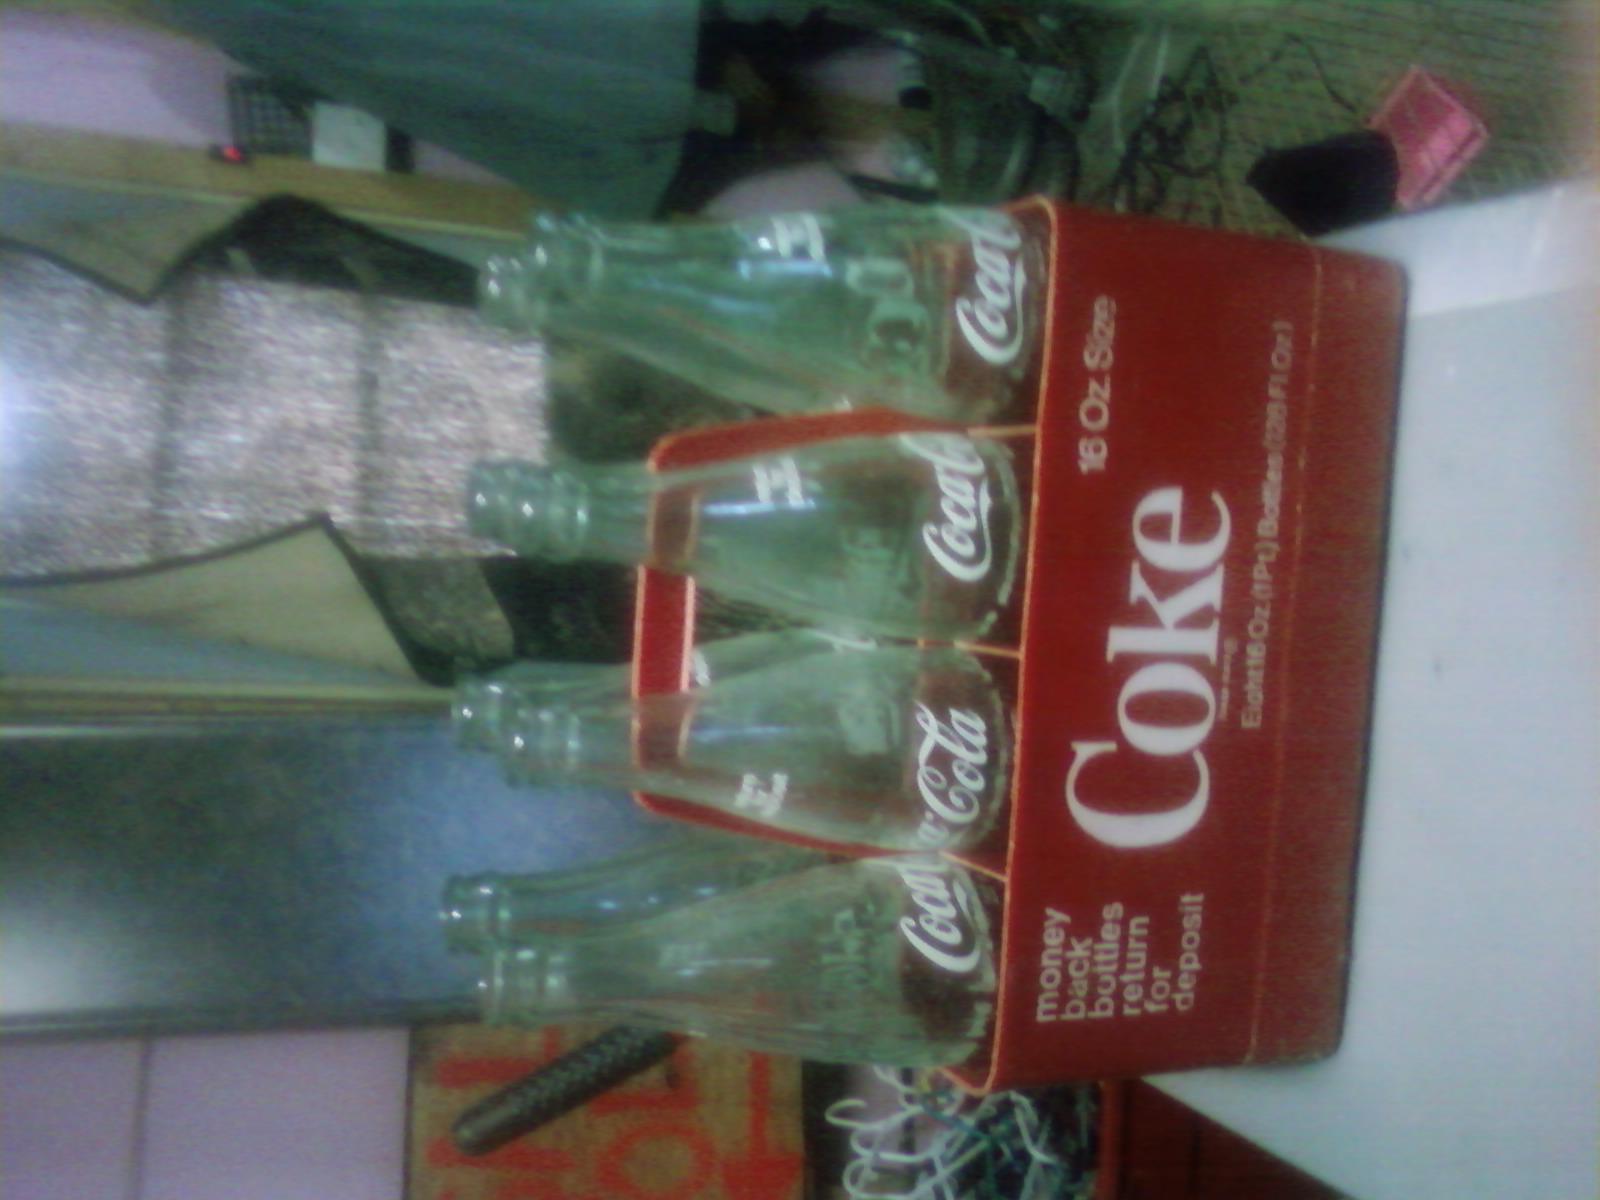 8- 16oz. coke bottles in a plastic carrying case